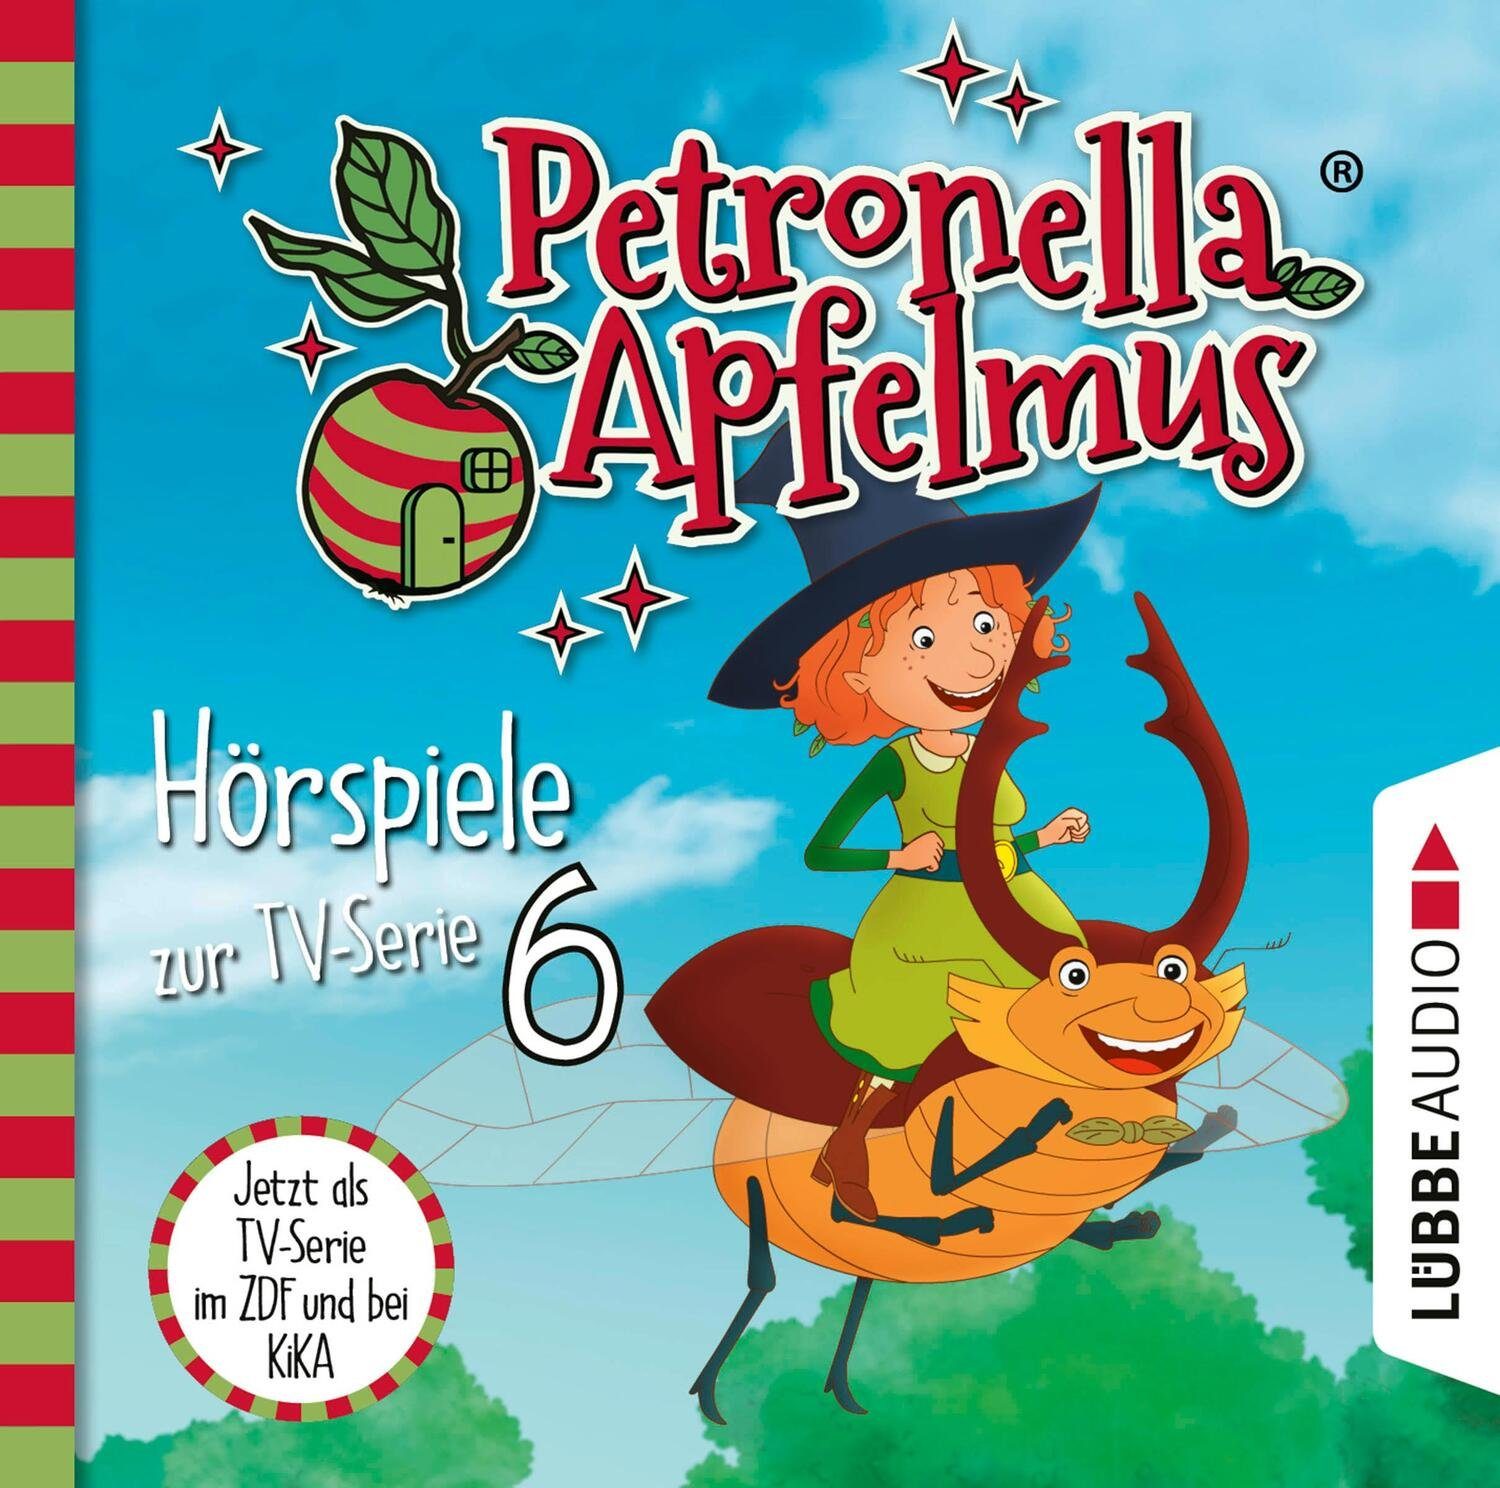 Hörspiel Petronella Apfelmus - Hörspiele zur TV-Serie 6